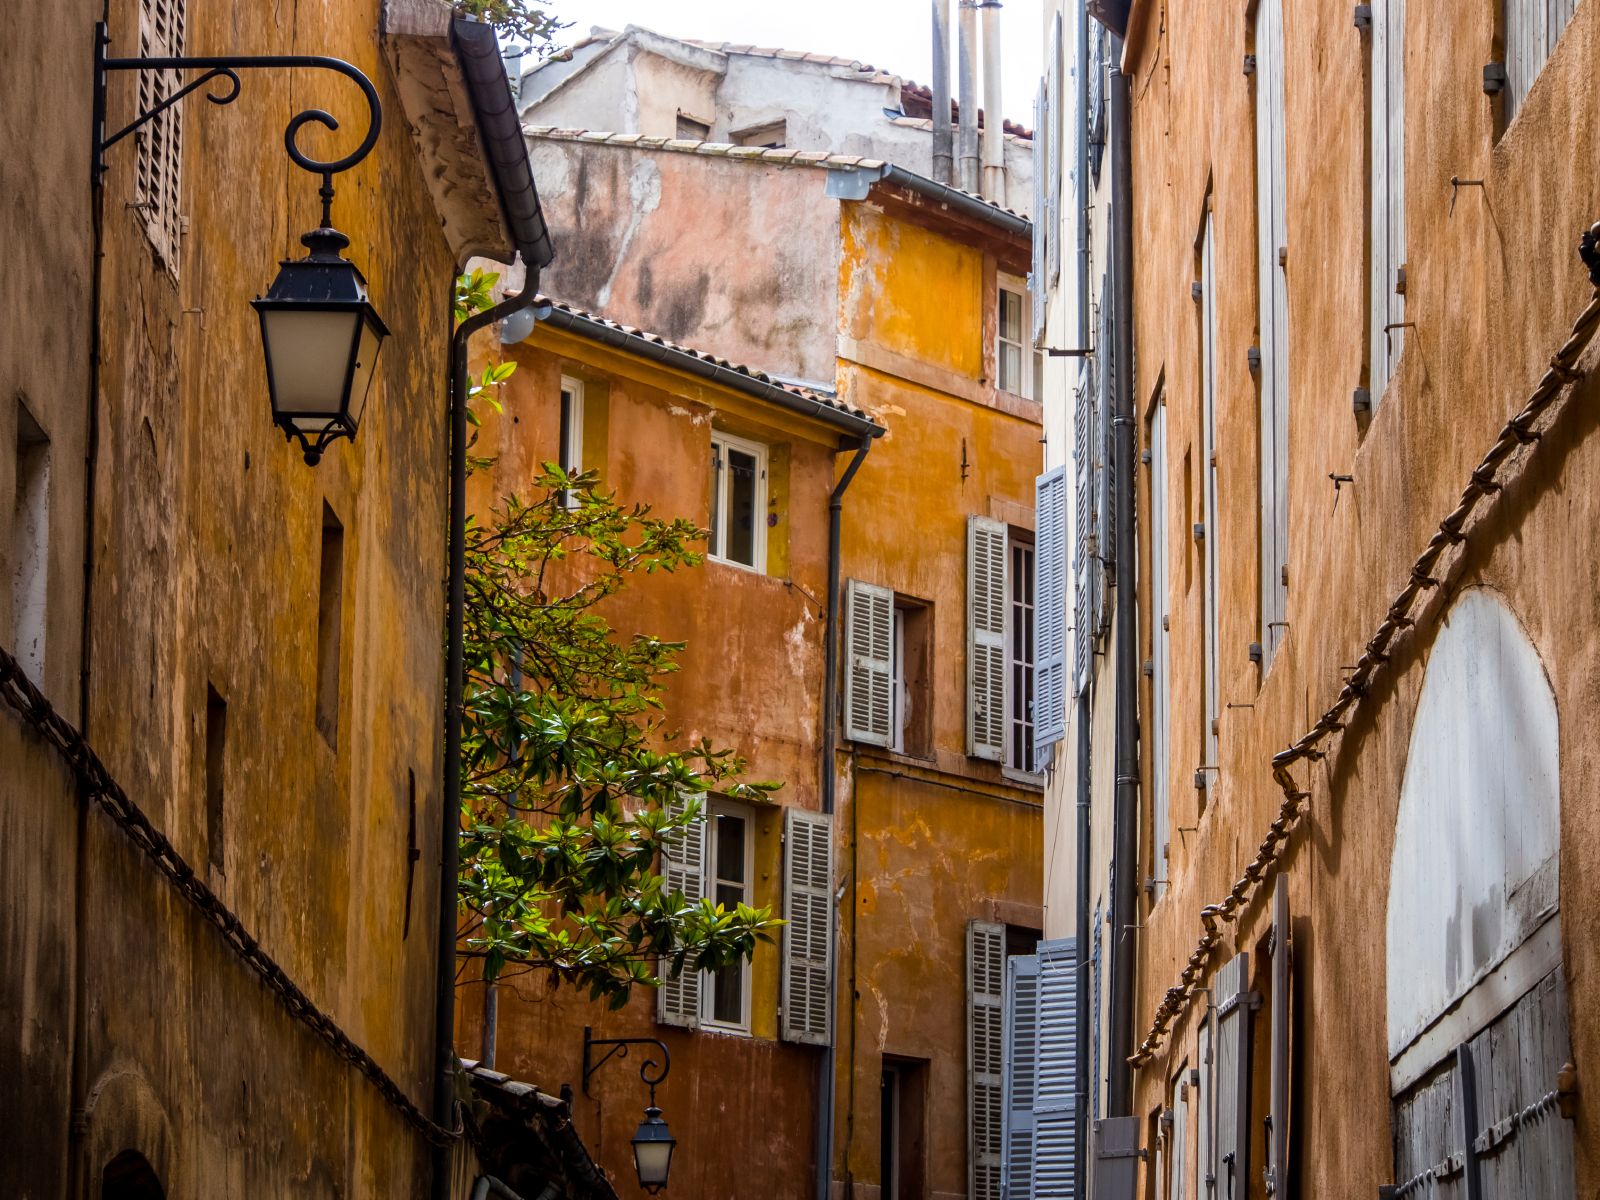 Petite rue, Aix-en-Provence - France ©iStock